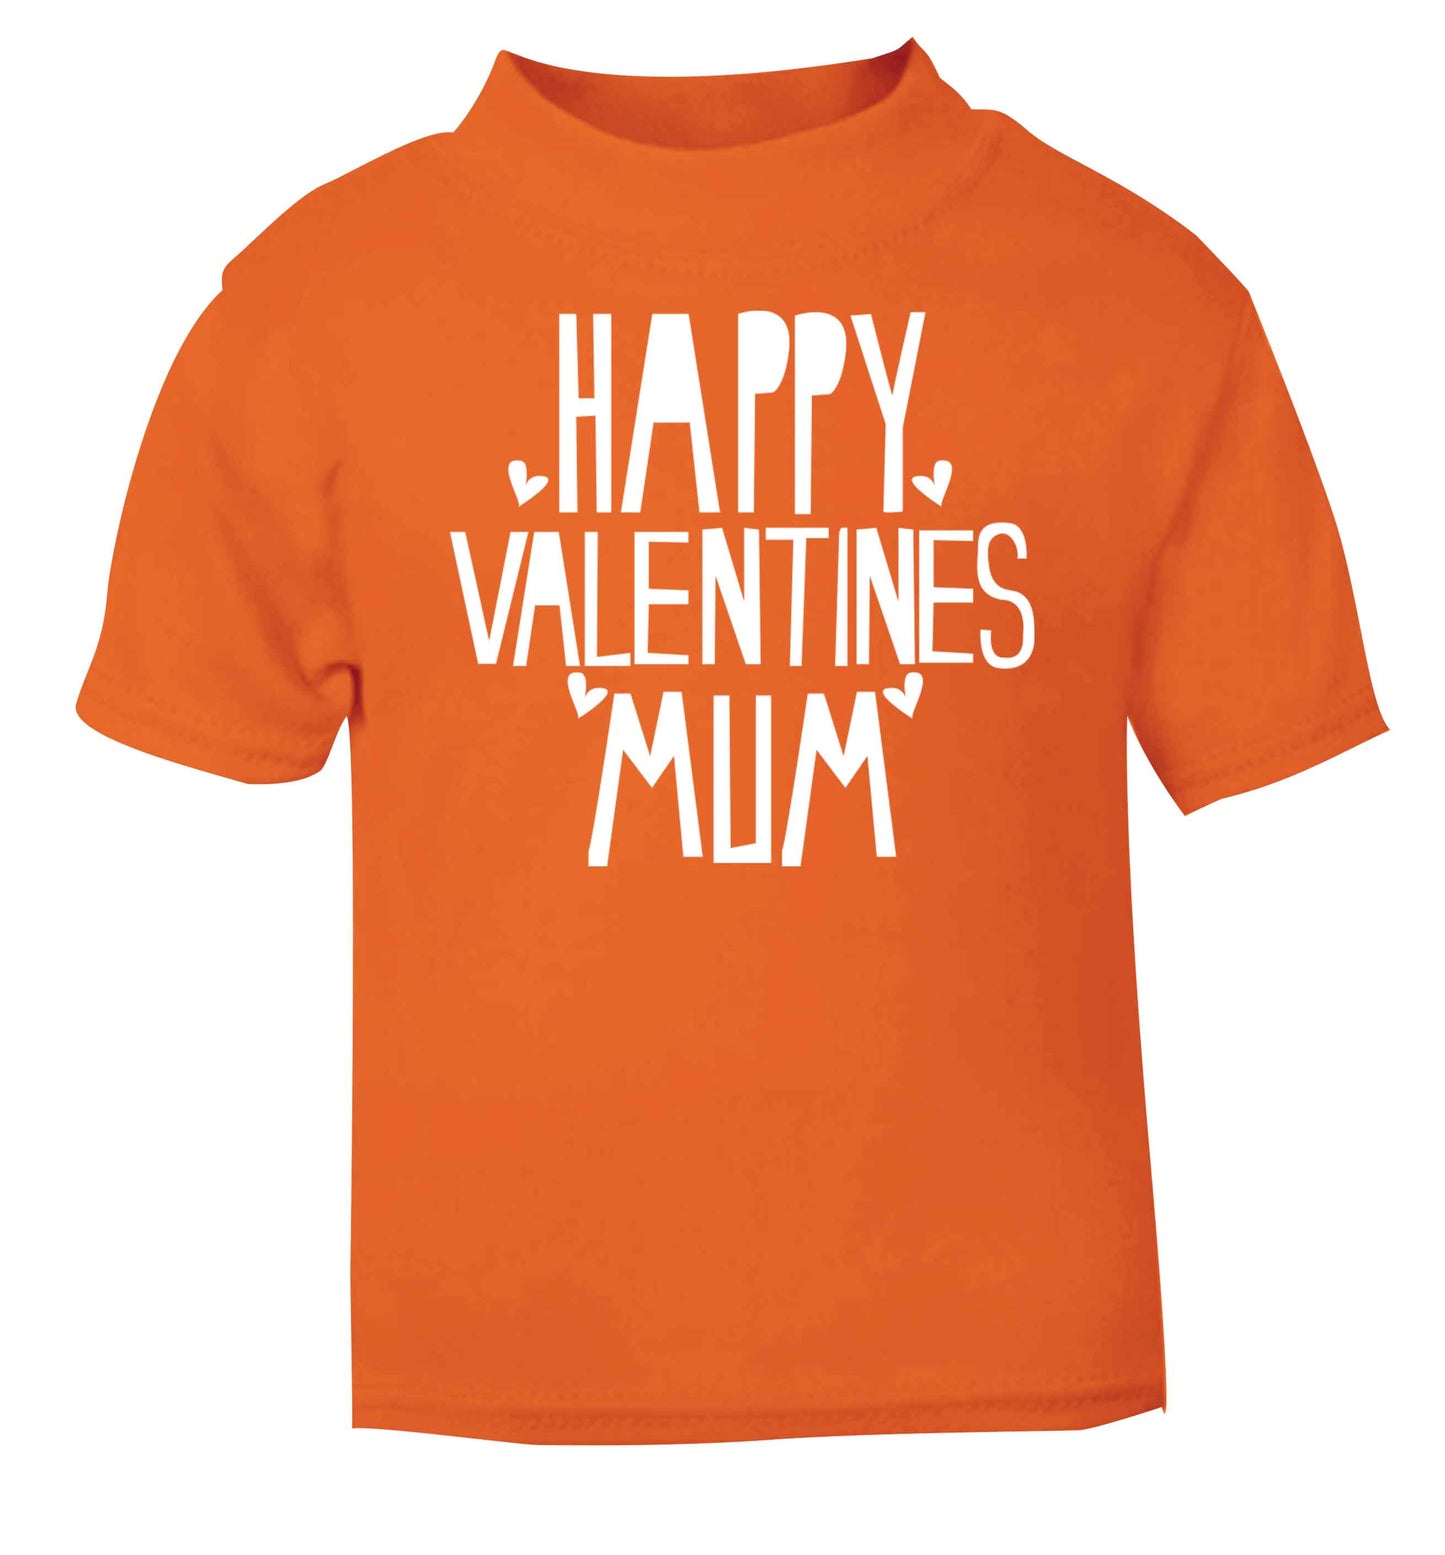 Happy valentines mum orange baby toddler Tshirt 2 Years